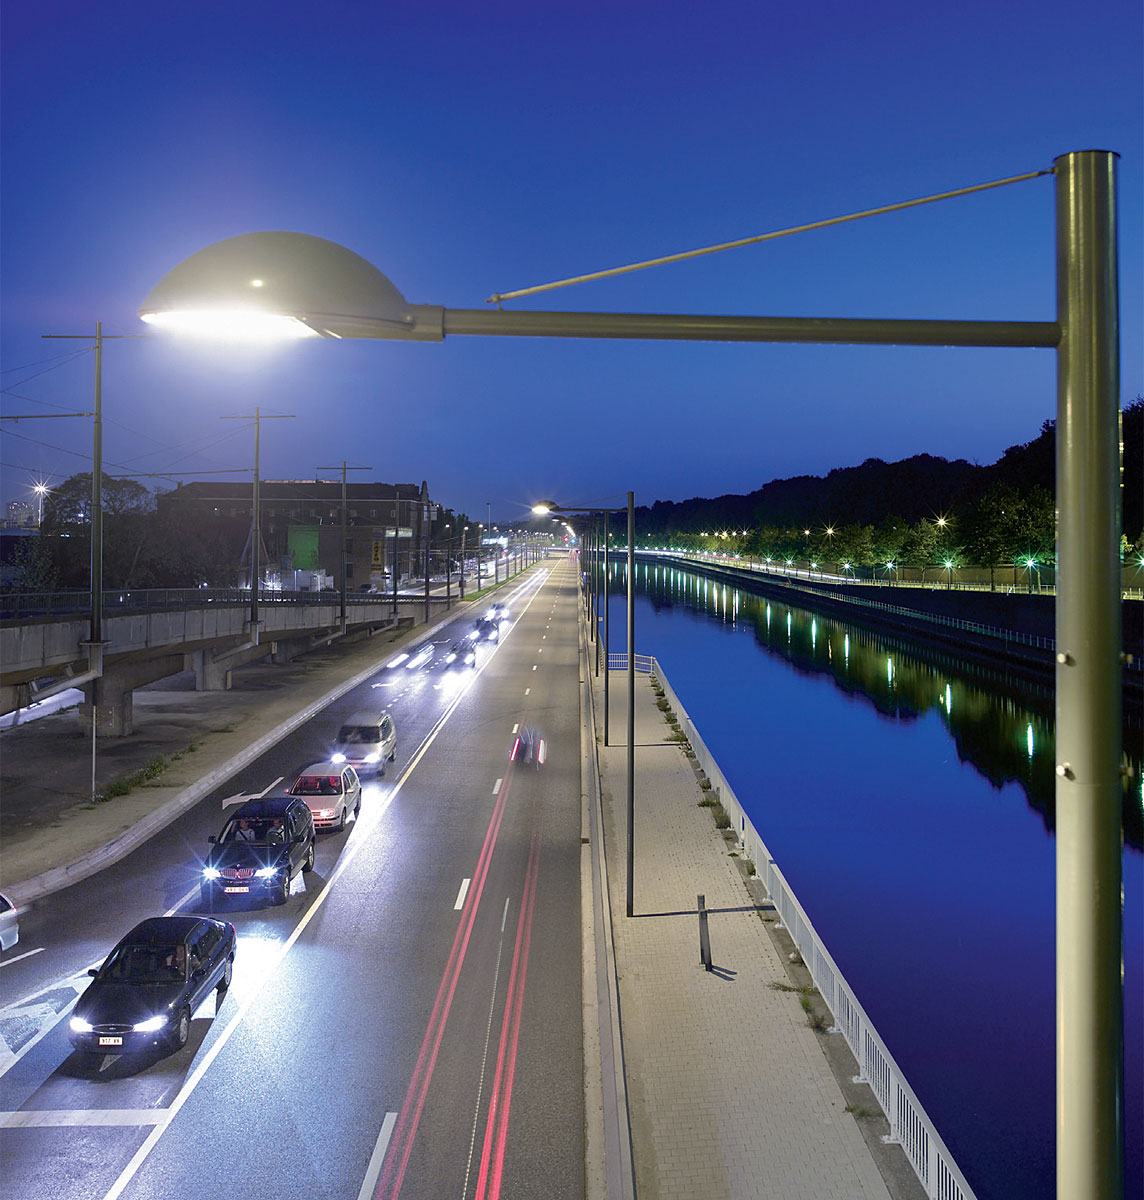 Najnowocześniejsze systemy sterowania oświetleniem ulicznym generują oszczędności. W połączeniu z oświetleniem LED, mogą zmniejszyć zużycie energii nawet o 70%, oraz spowodować zmniejszenie kosztów utrzymania aż do 70%, w porównaniu z oświetleniem konwencjonalnym.